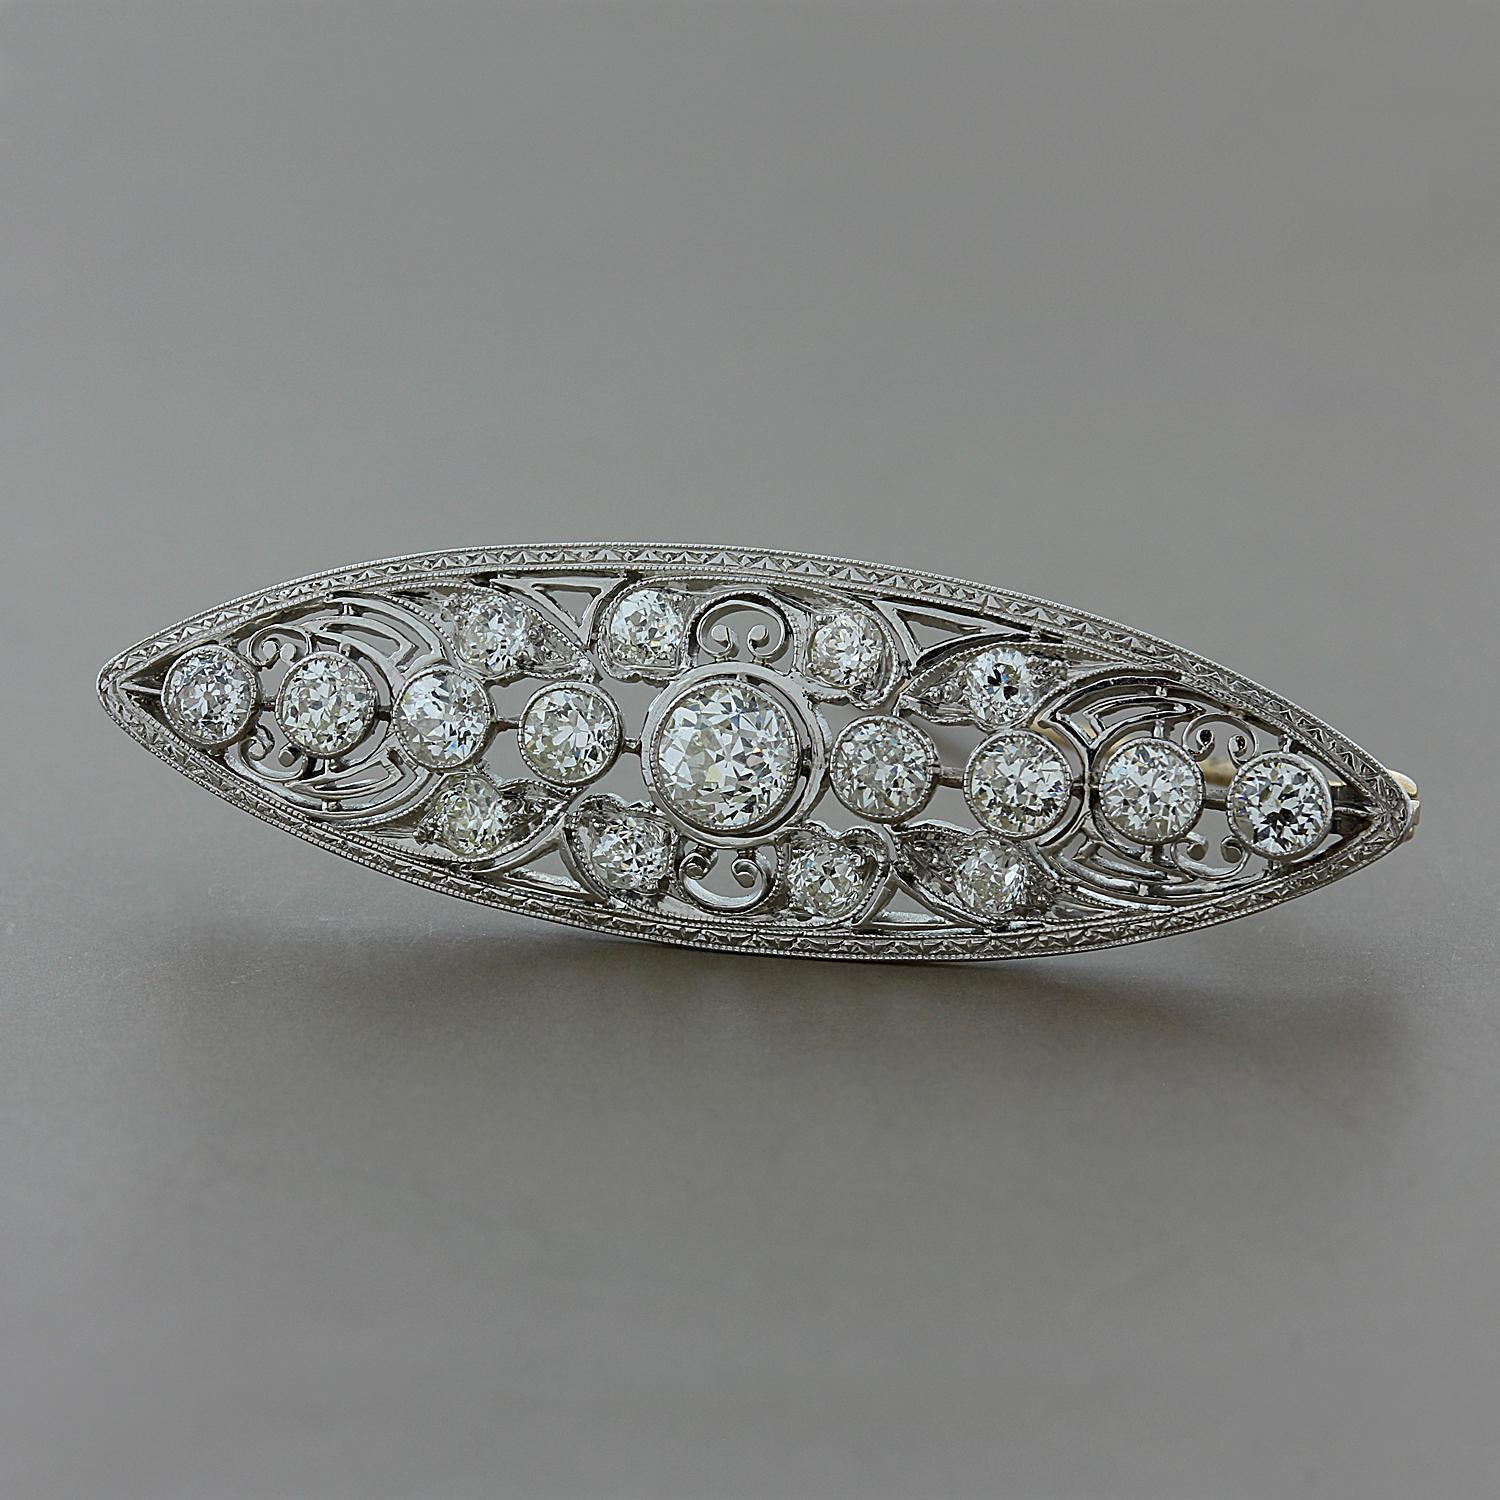 Superbe broche édouardienne du début des années 1900, comportant 3 carats de diamants de qualité VS de taille européenne. Serti en platine avec une épingle à charnière en or jaune 14K.

Longueur de la broche : 2 pouces
Largeur de la broche : ½ pouce
